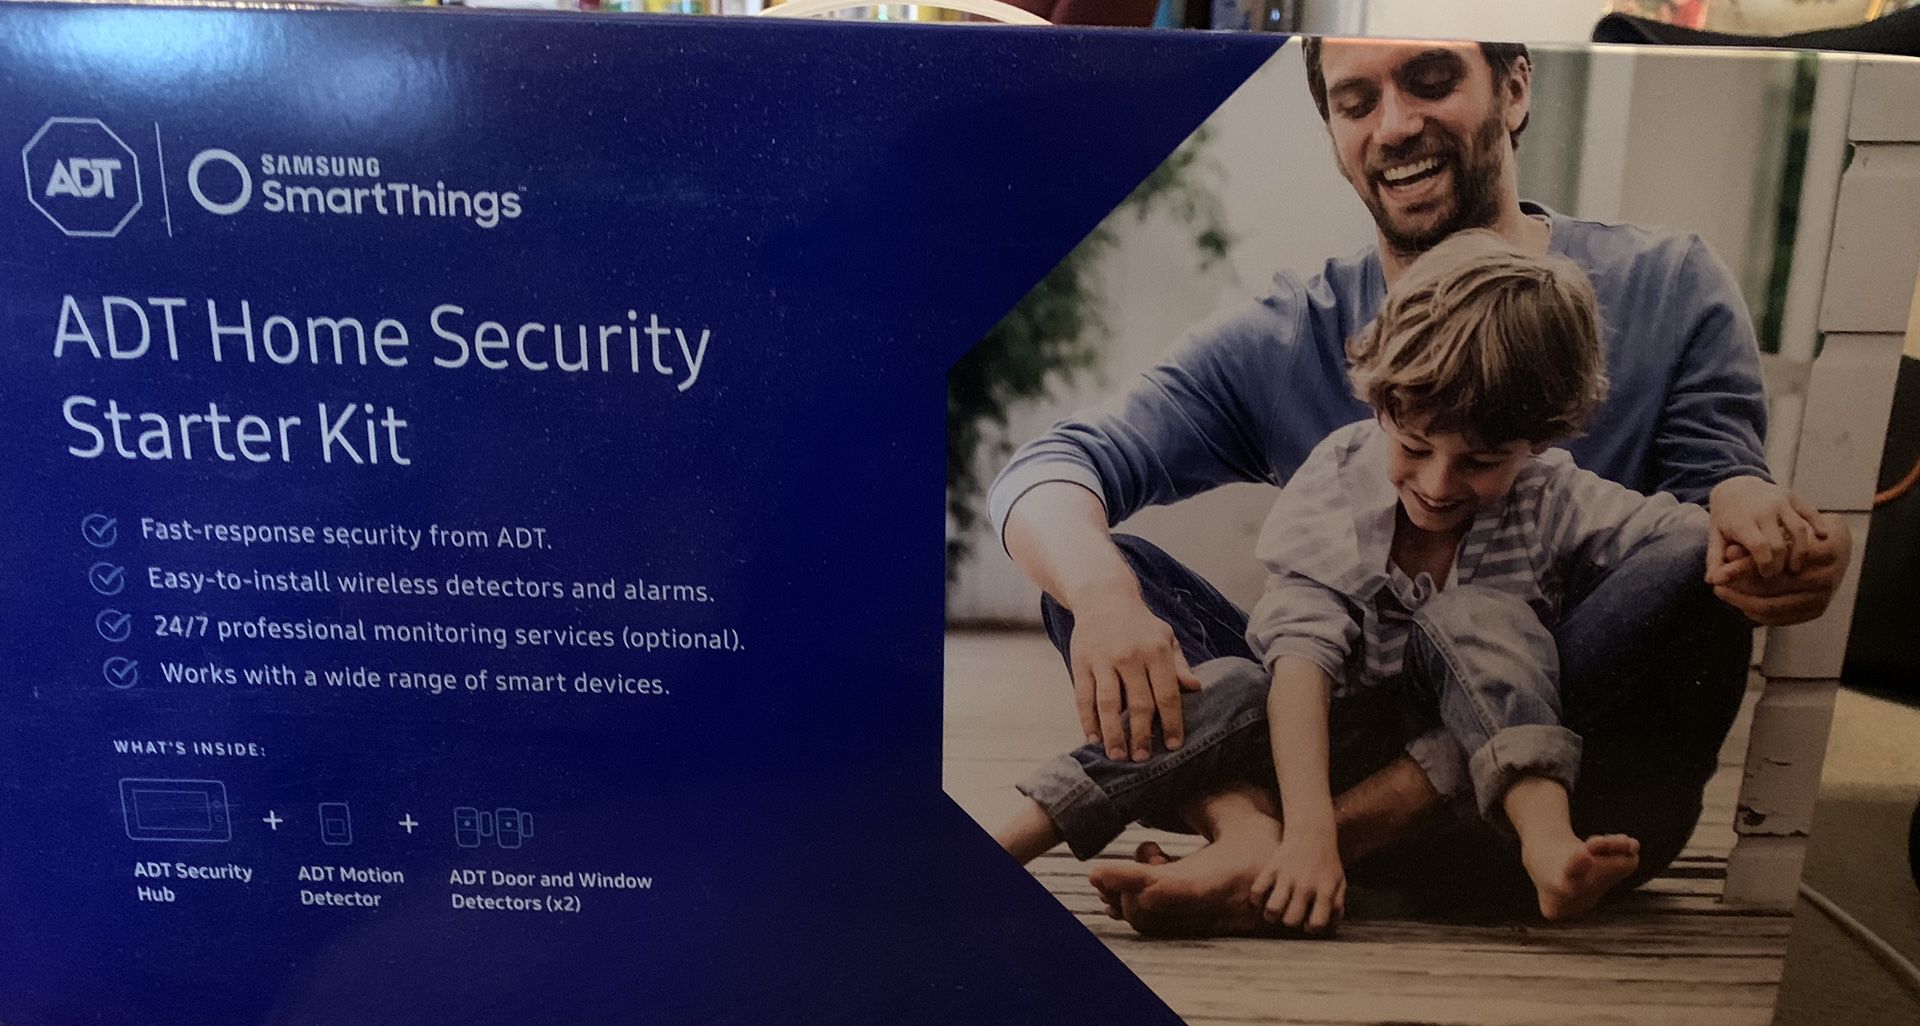 ADT Home Security Starter Kit (Samsung)